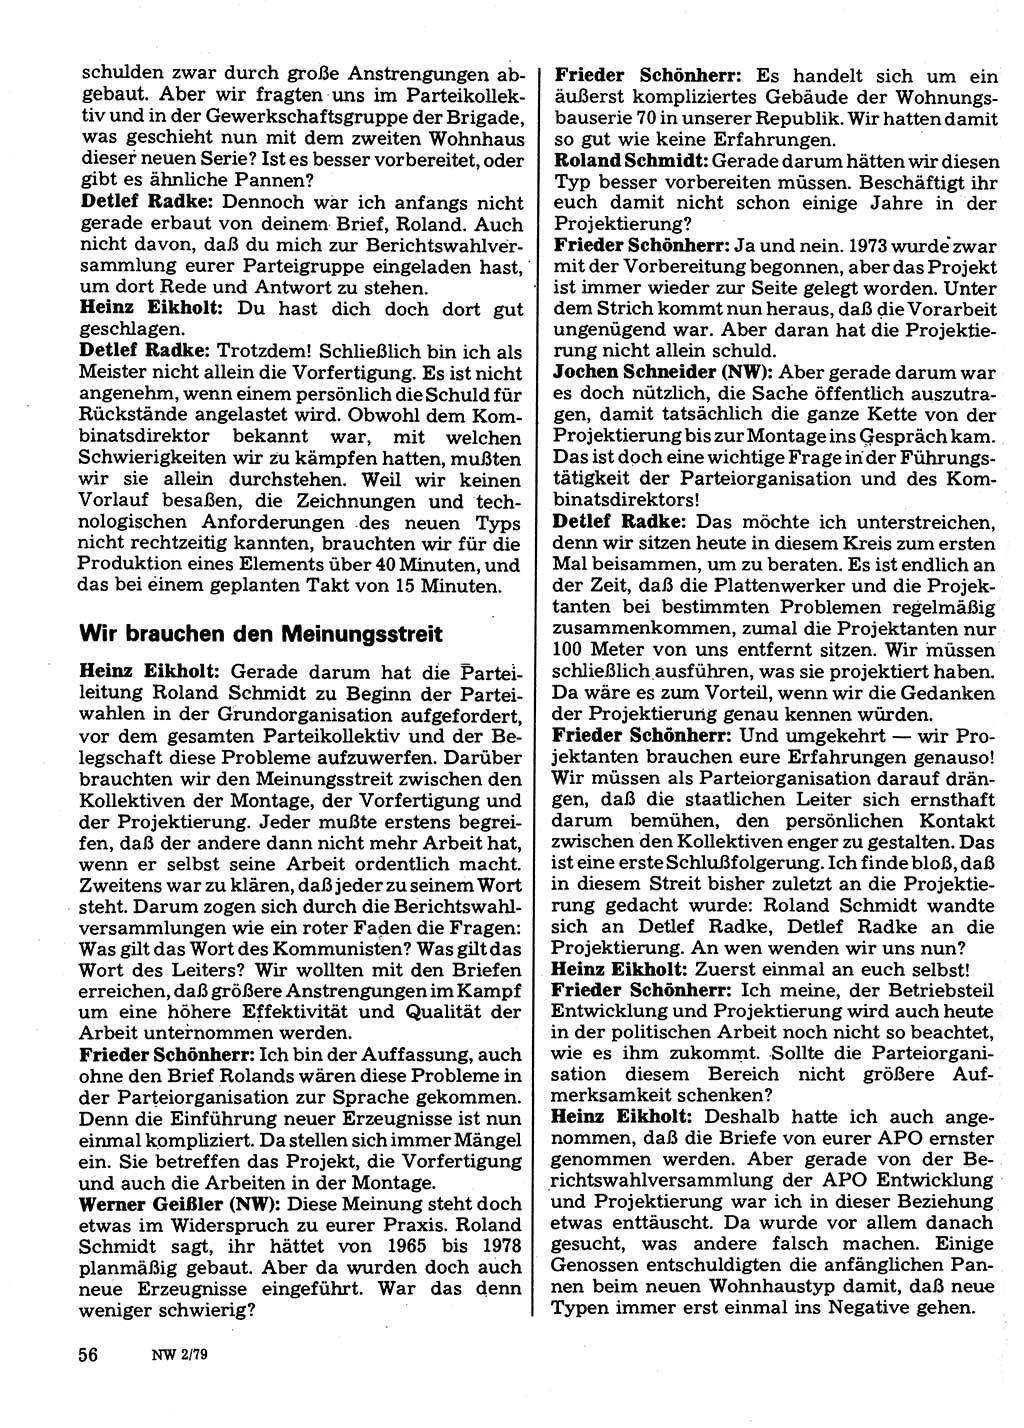 Neuer Weg (NW), Organ des Zentralkomitees (ZK) der SED (Sozialistische Einheitspartei Deutschlands) für Fragen des Parteilebens, 34. Jahrgang [Deutsche Demokratische Republik (DDR)] 1979, Seite 56 (NW ZK SED DDR 1979, S. 56)